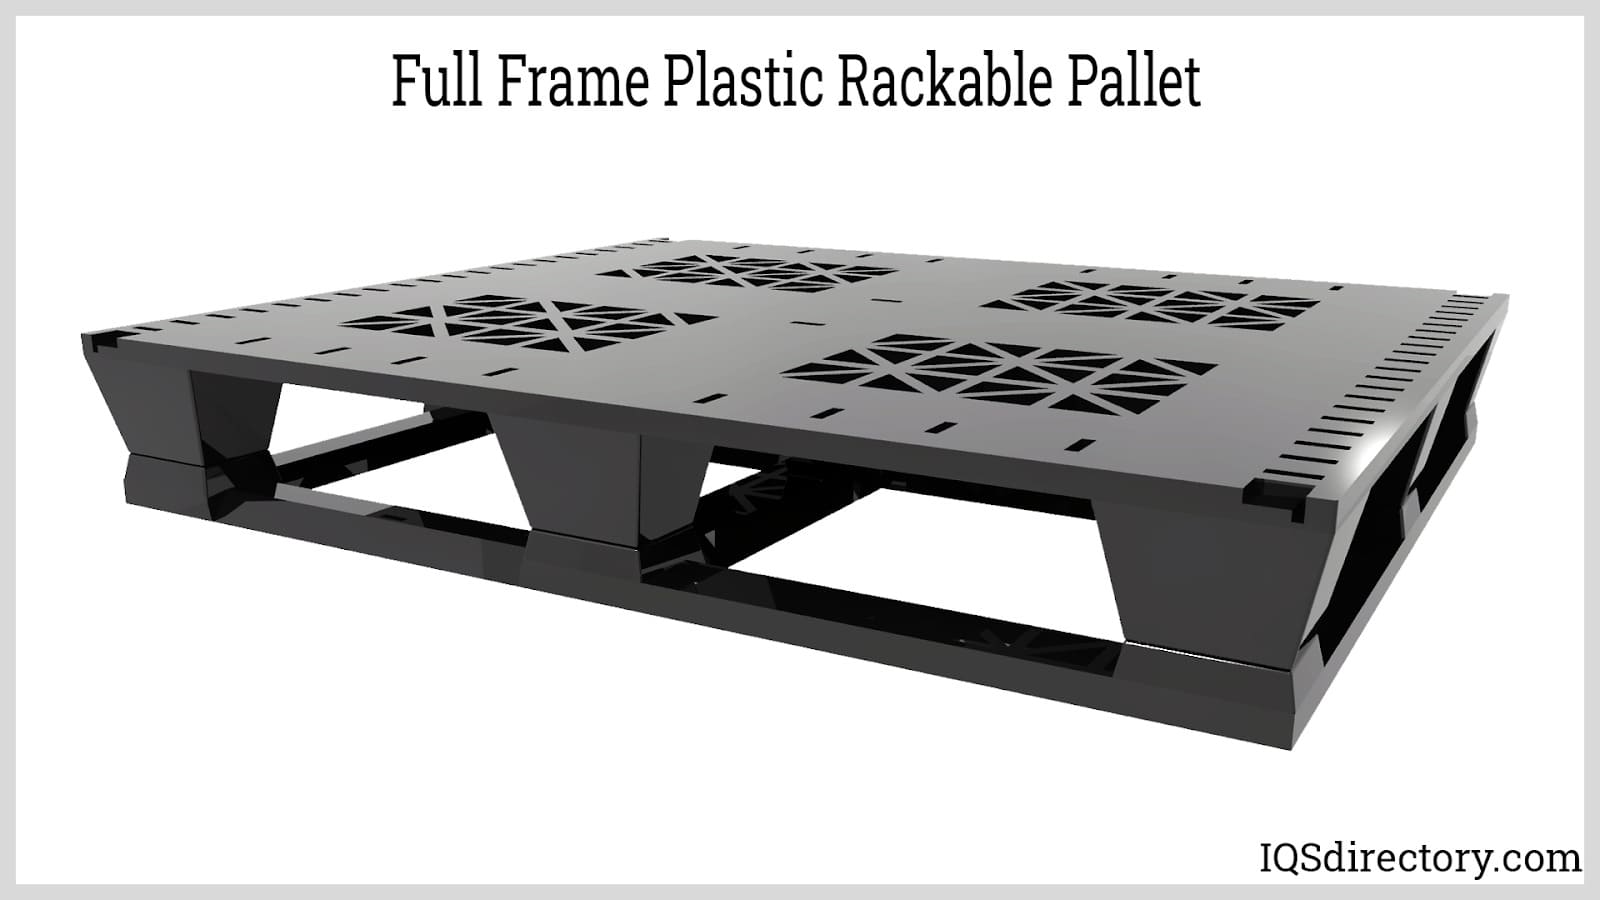 Full Frame Plastic Rackable Pallet